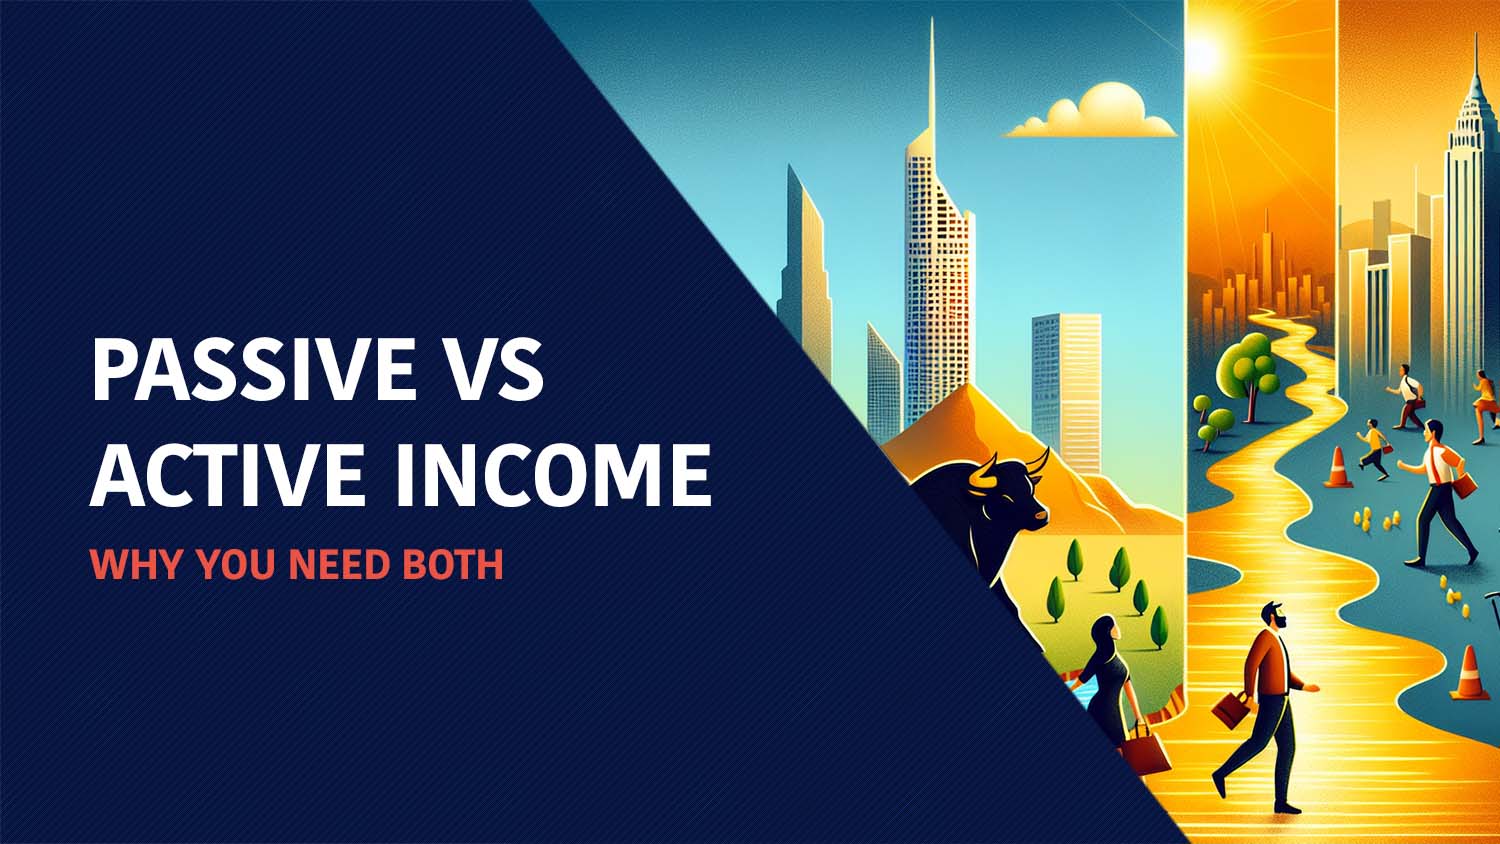 Passive vs active income